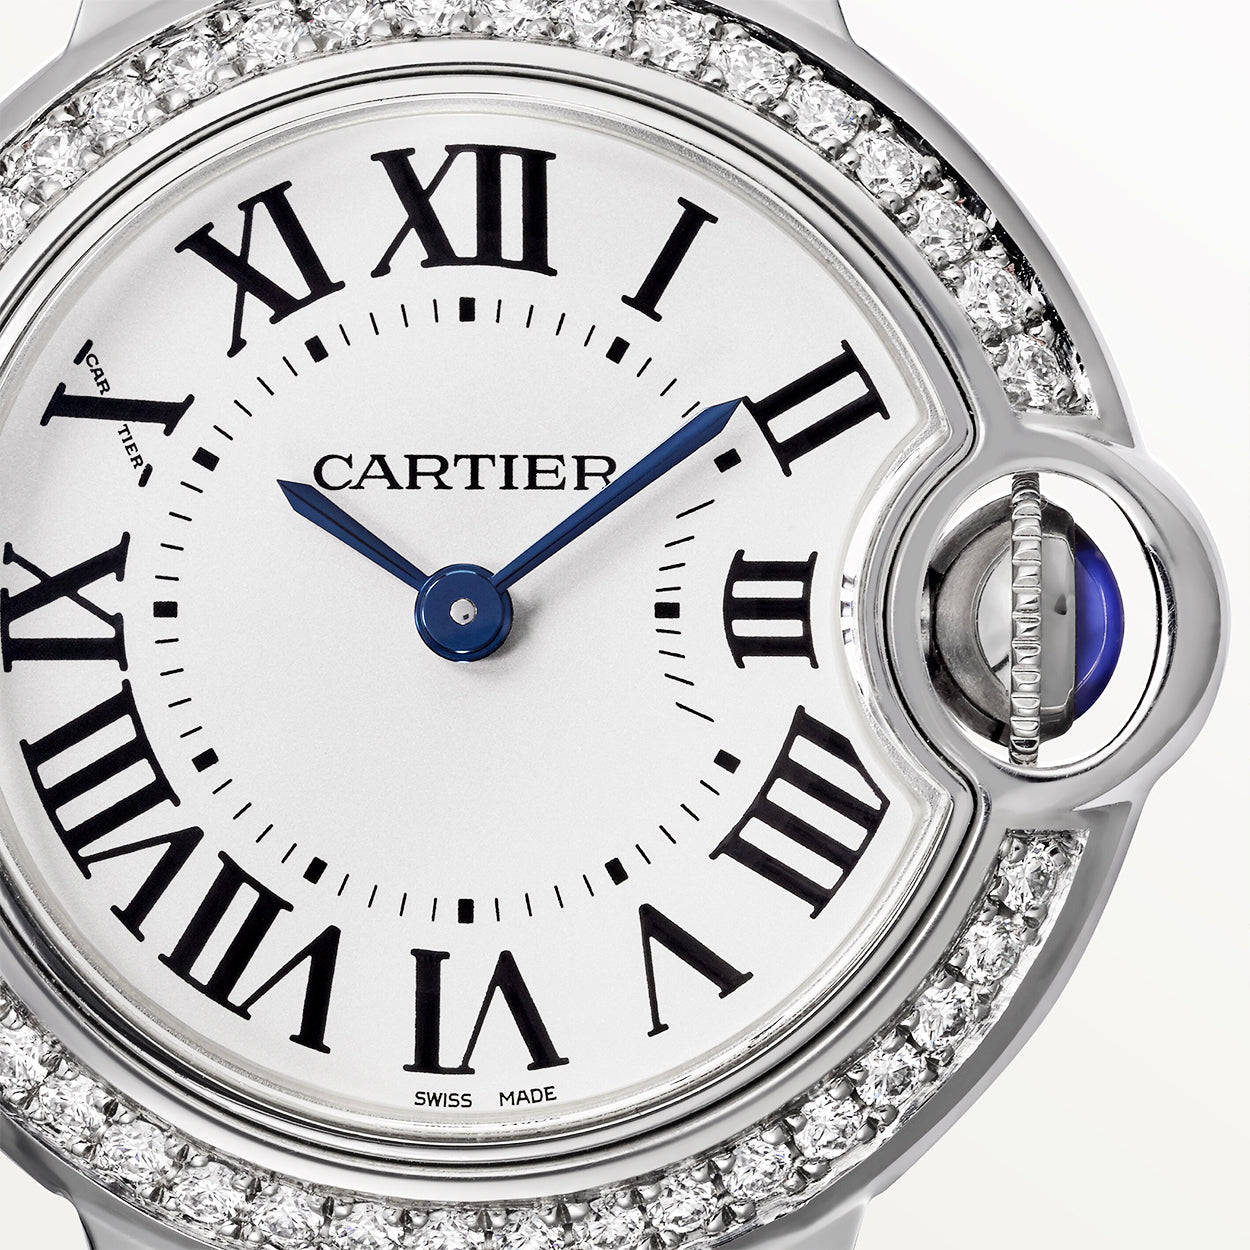 Ballon Bleu de Cartier 28mm Diamond Bezel Watch